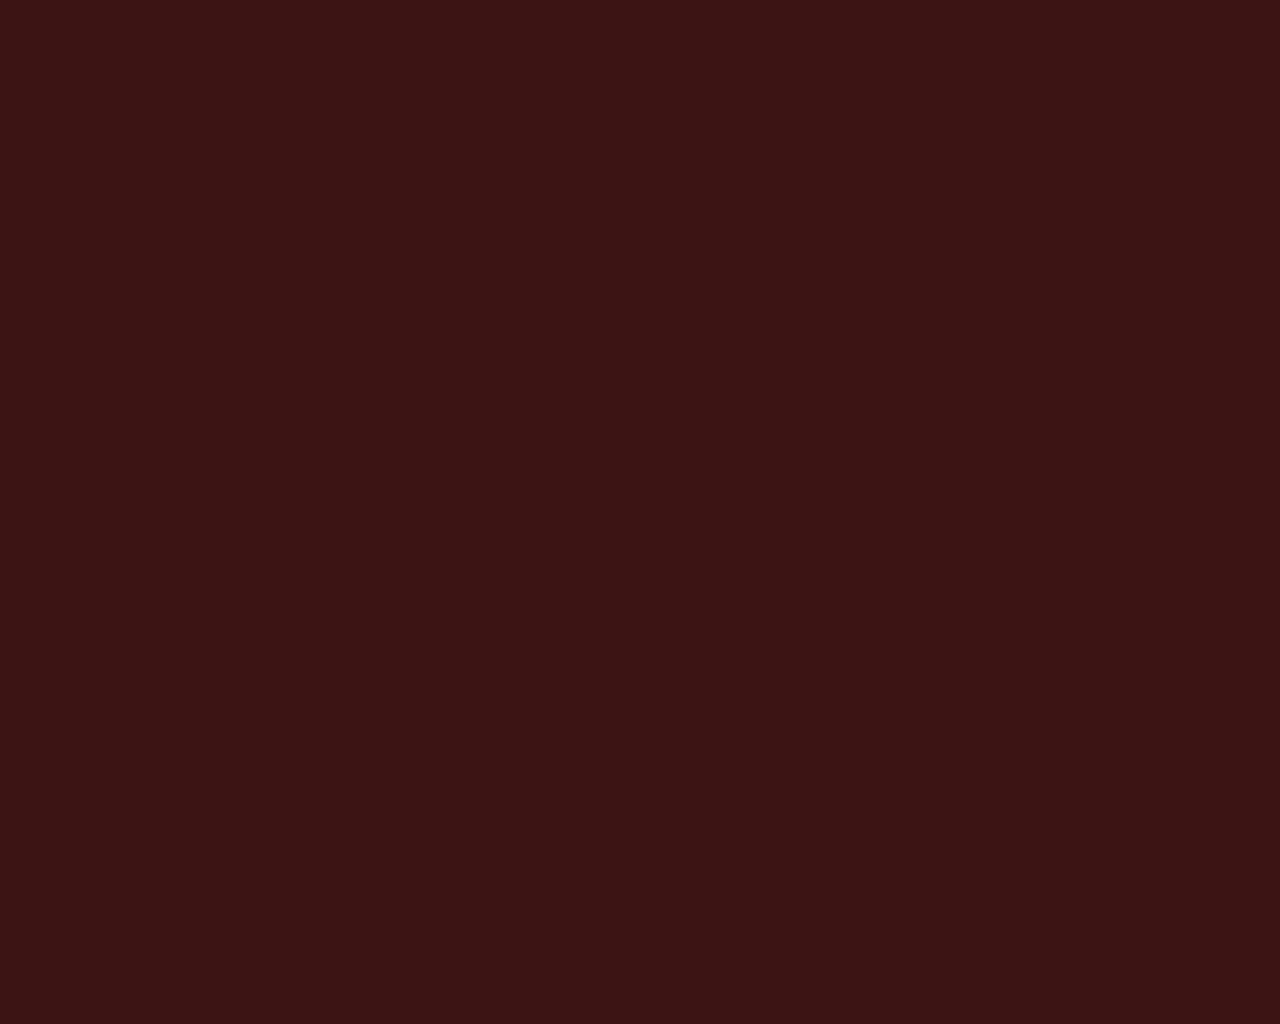 1280x1024 Dark Sienna Solid Color Background